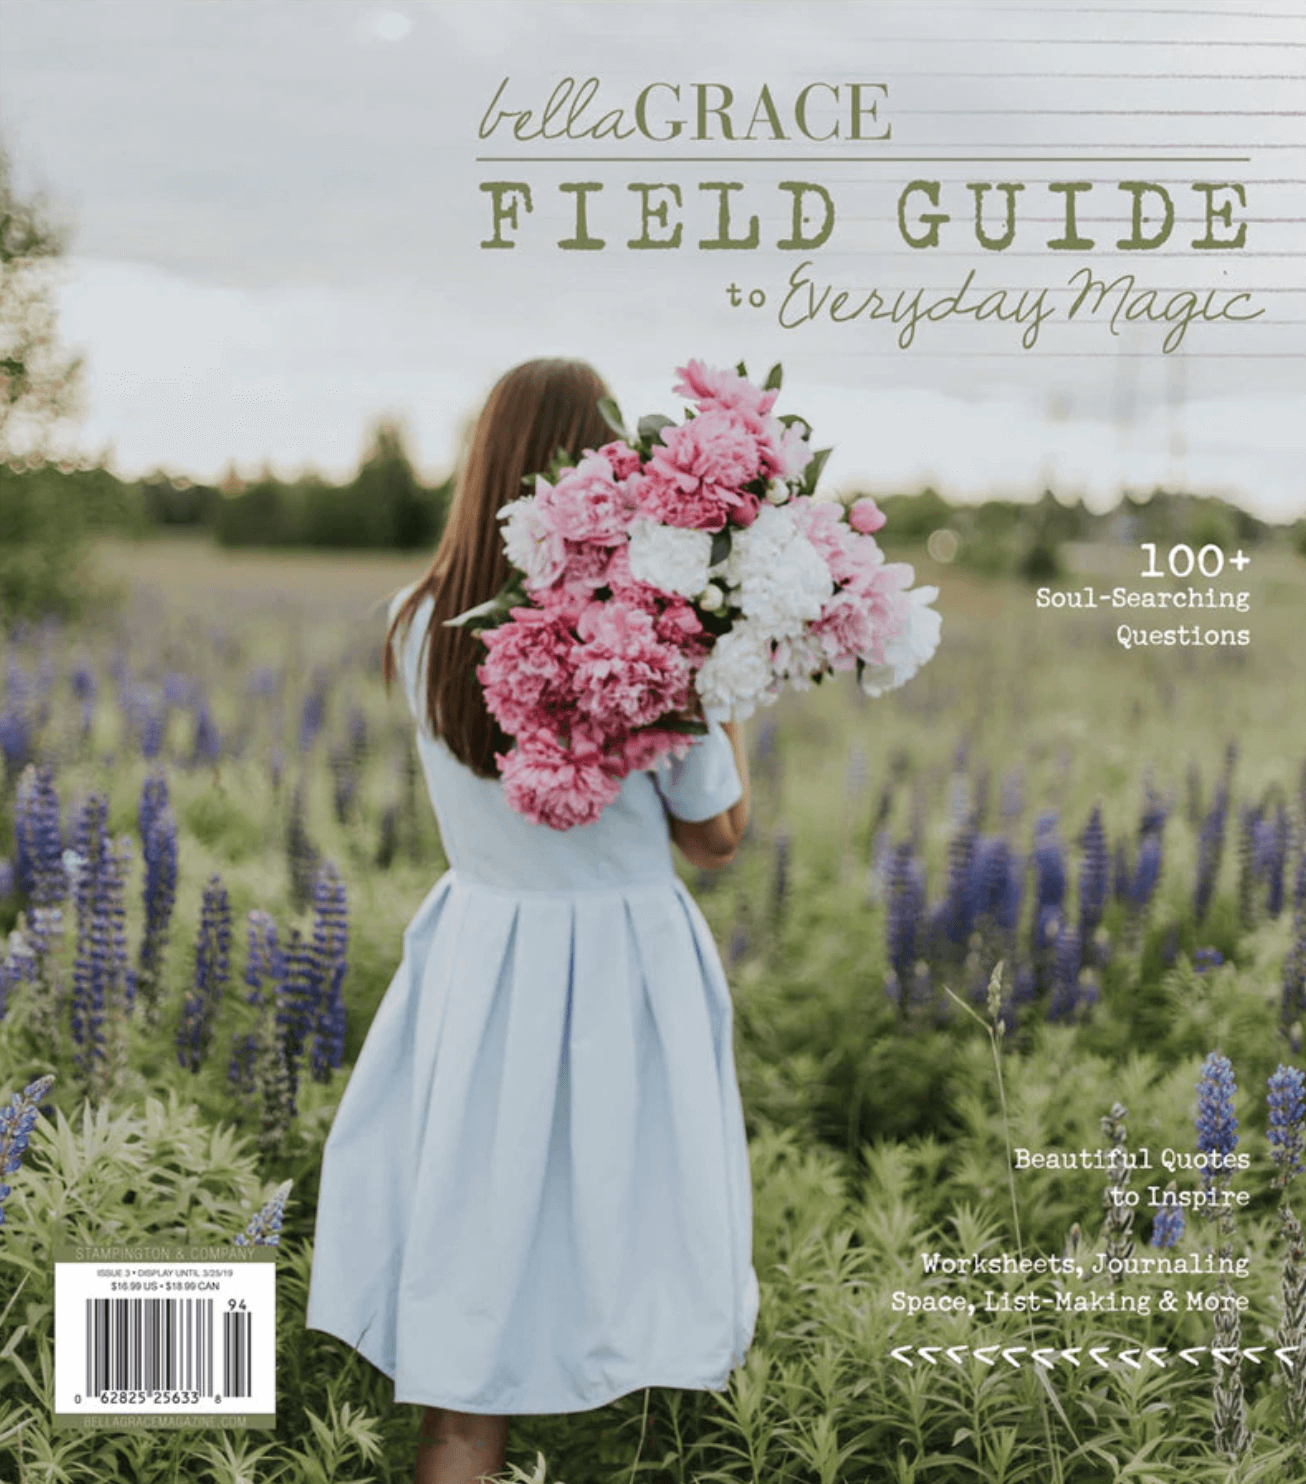 Bella Grace Magazine's Valentine's Day Gift Guide